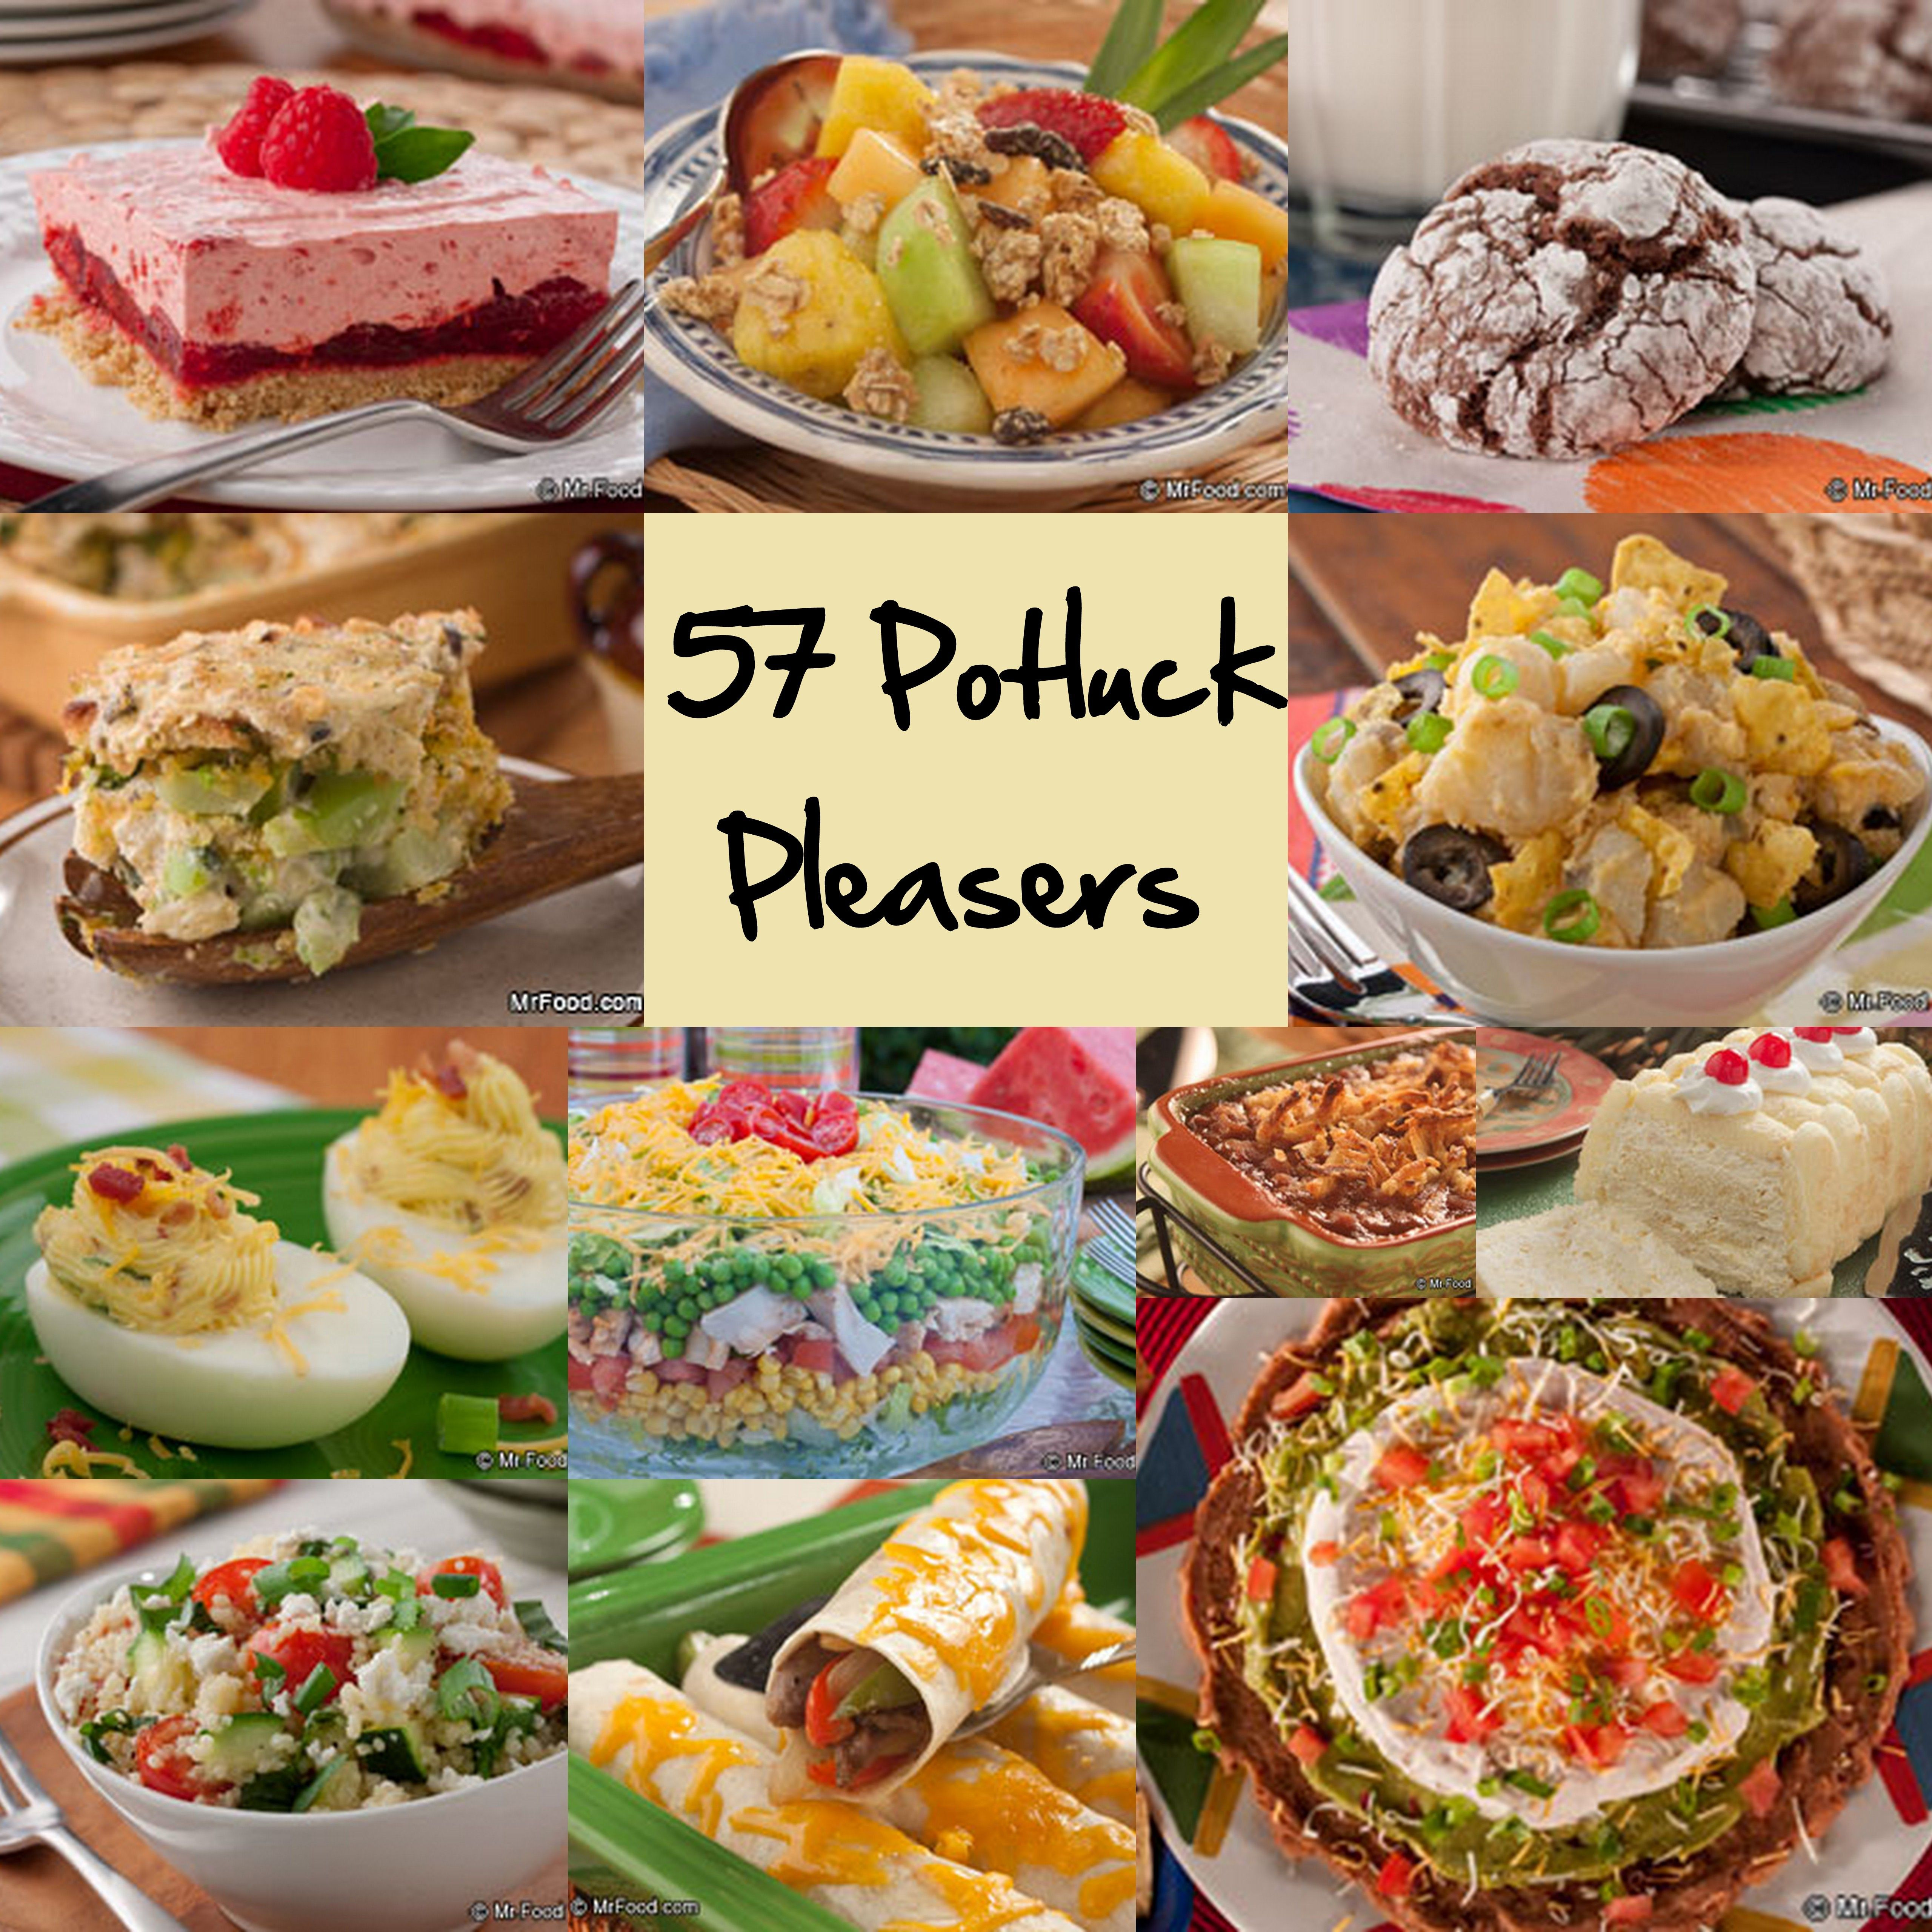 Christmas Party Potluck Ideas
 Easy Potluck Recipes 58 Potluck Ideas